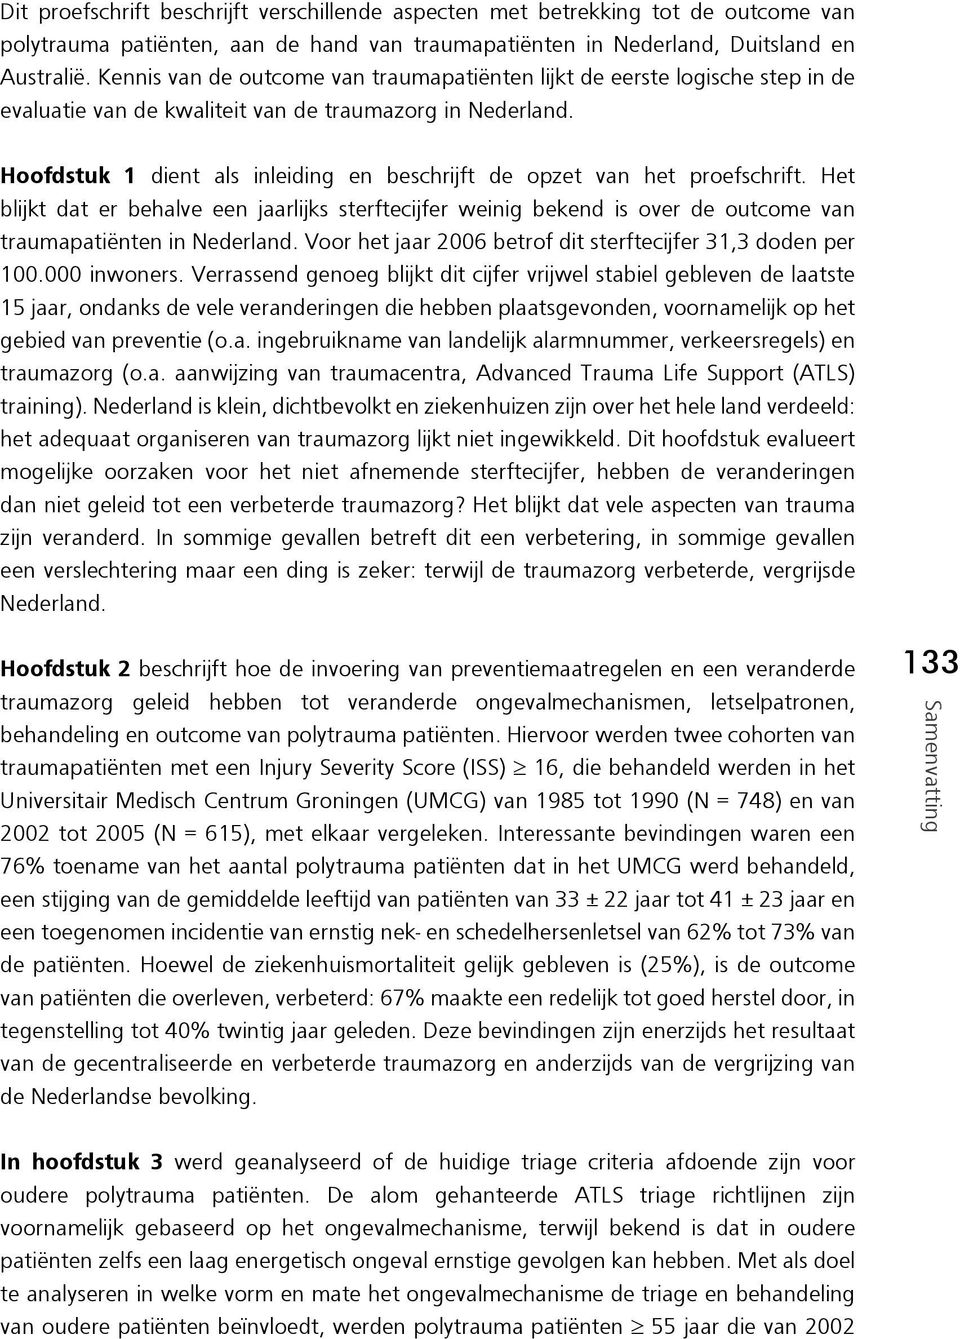 Hoofdstuk 1 dient als inleiding en beschrijft de opzet van het proefschrift. Het blijkt dat er behalve een jaarlijks sterftecijfer weinig bekend is over de outcome van traumapatiënten in Nederland.